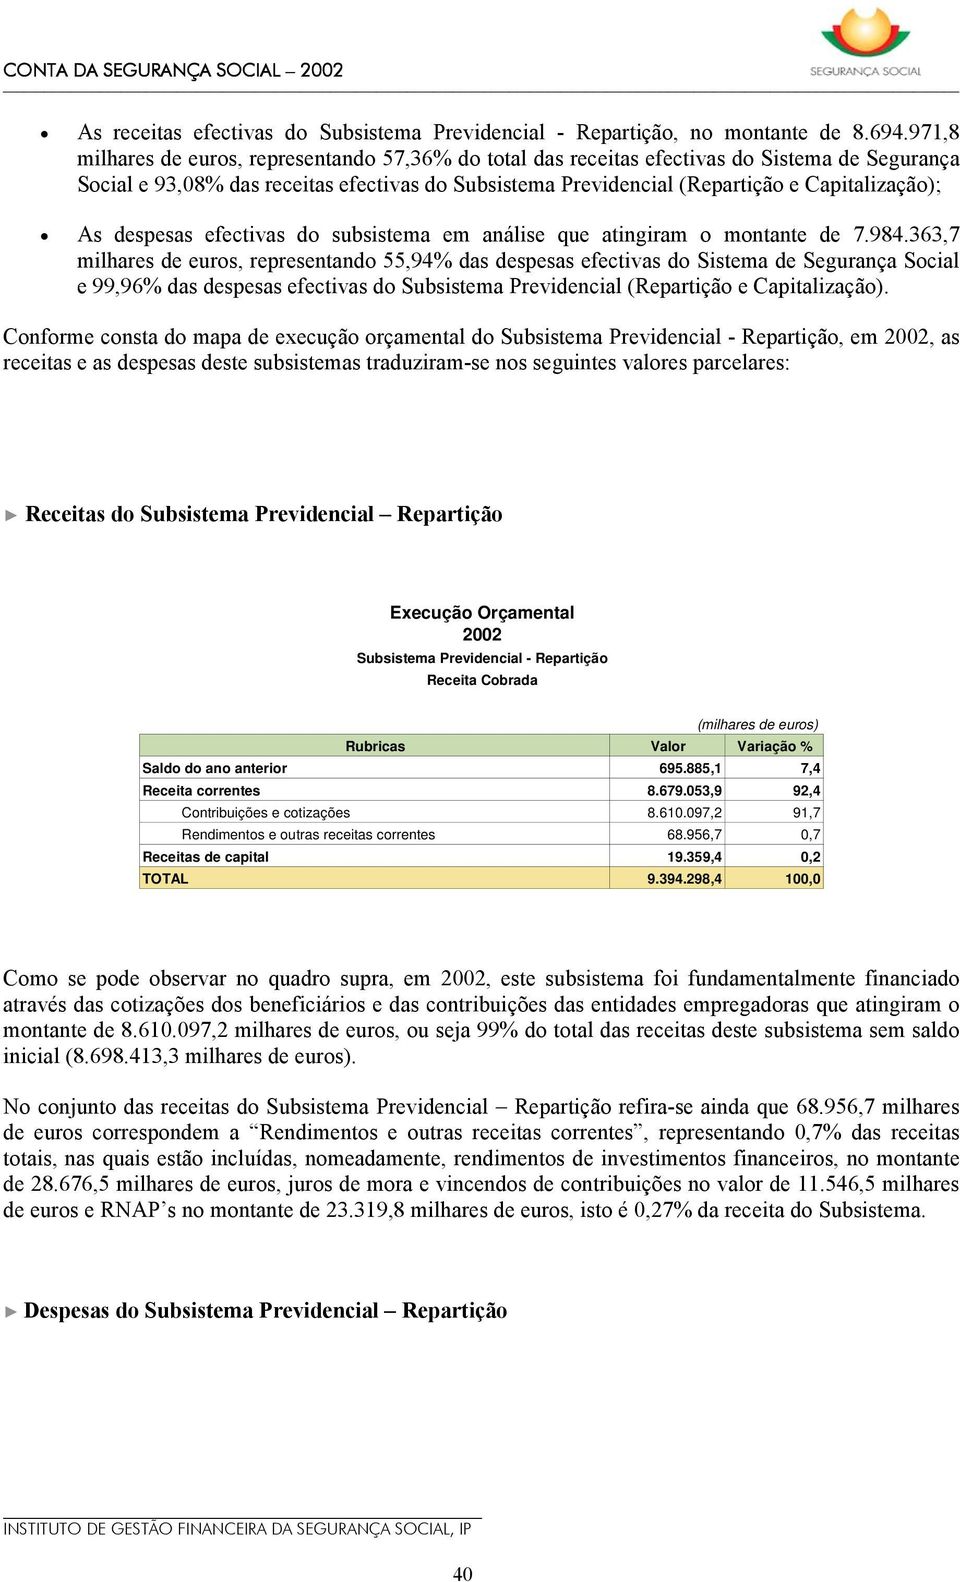 As despesas efectivas do subsistema em análise que atingiram o montante de 7.984.